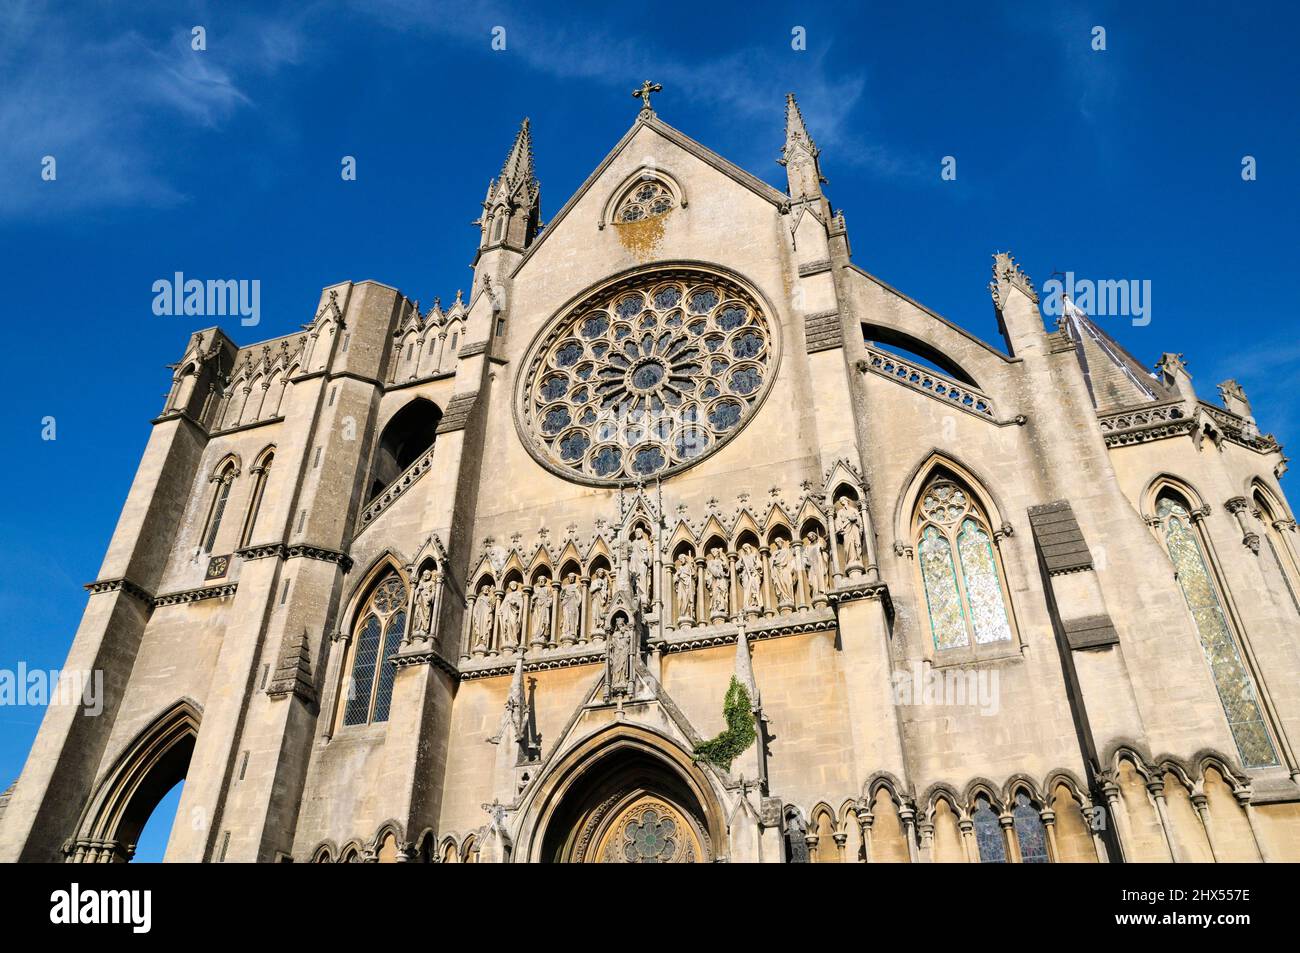 Kathedrale von Arundel, Westfassade. Die Cathedral Church of Our Lady and St. Philip Howard. Rosenfenster über verzierten Schnitzereien von Maria, Christus und Aposteln Stockfoto